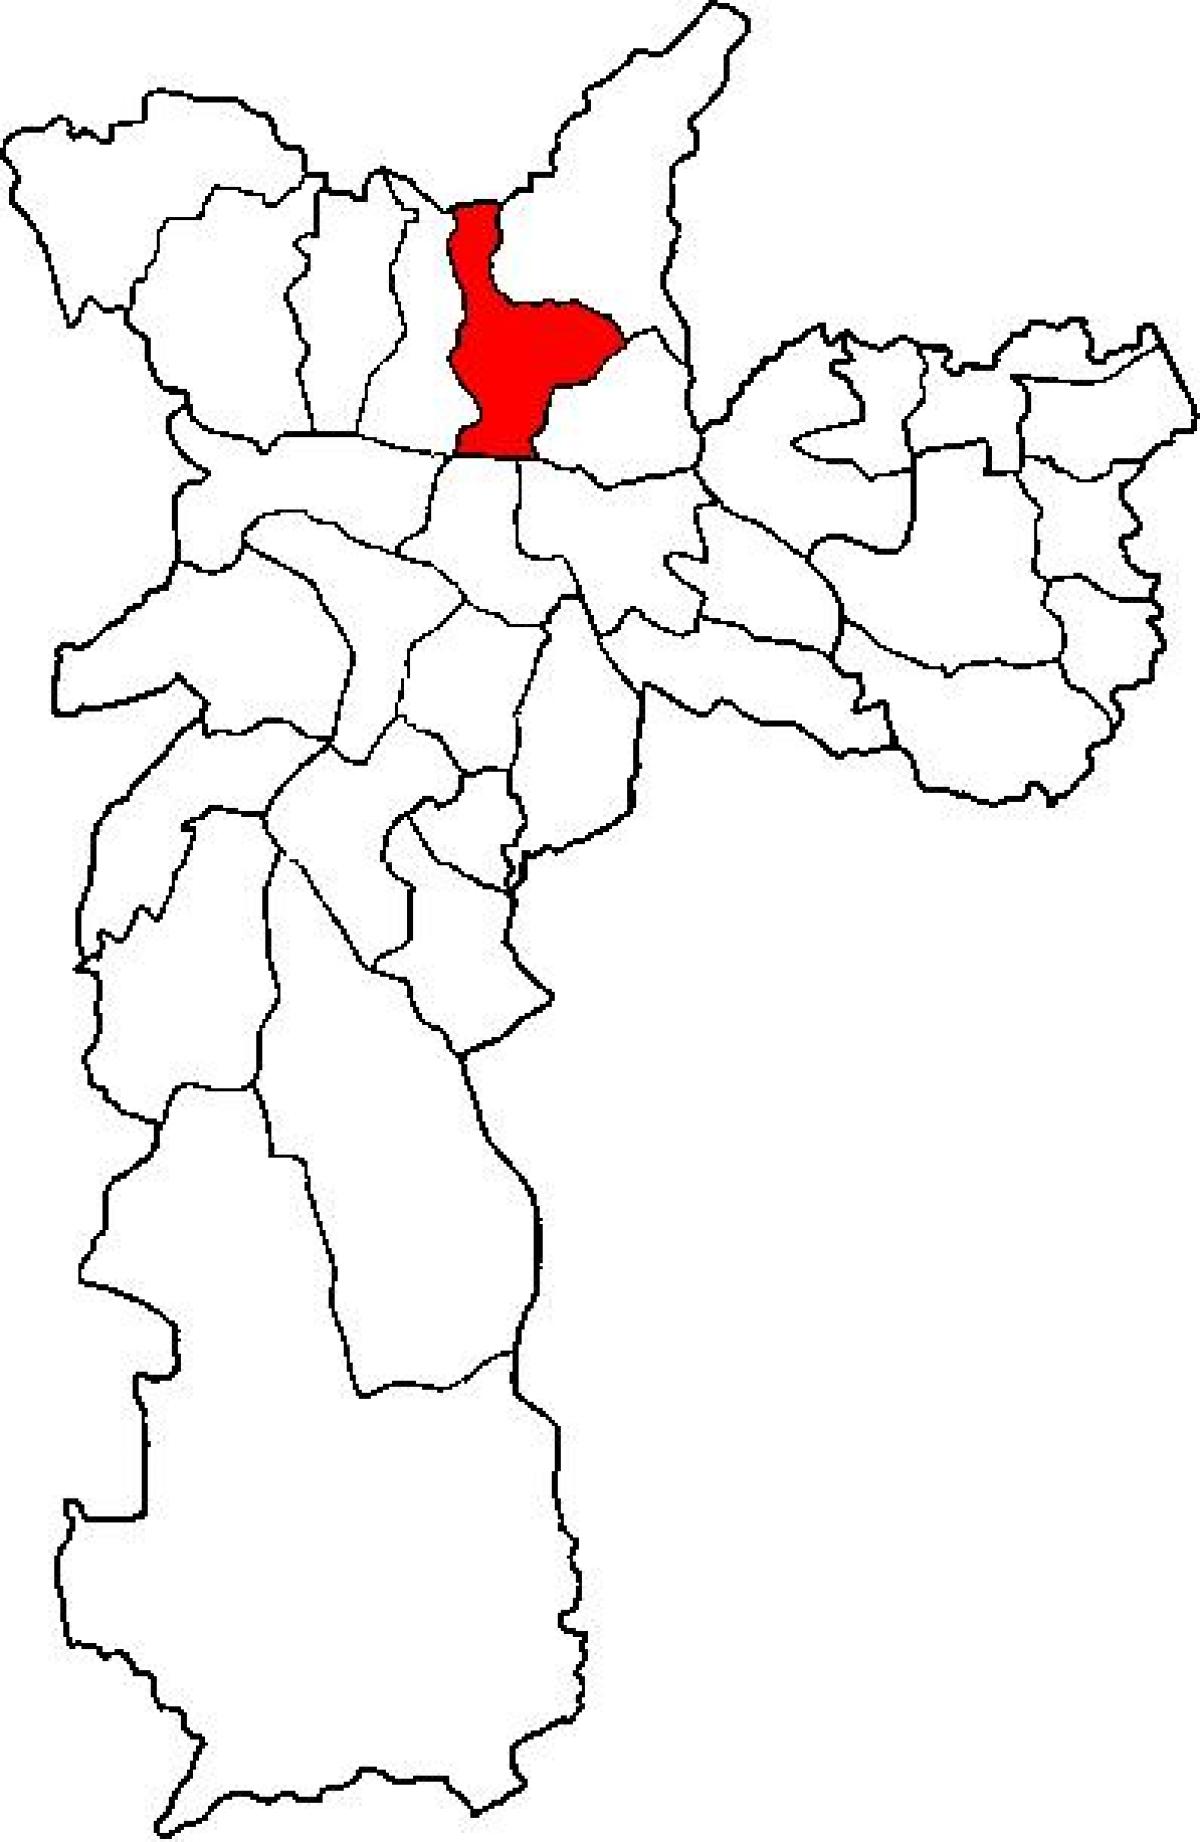 แผนที่ของซานทาน่ารายการย่อยขอ prefecture São Paulo